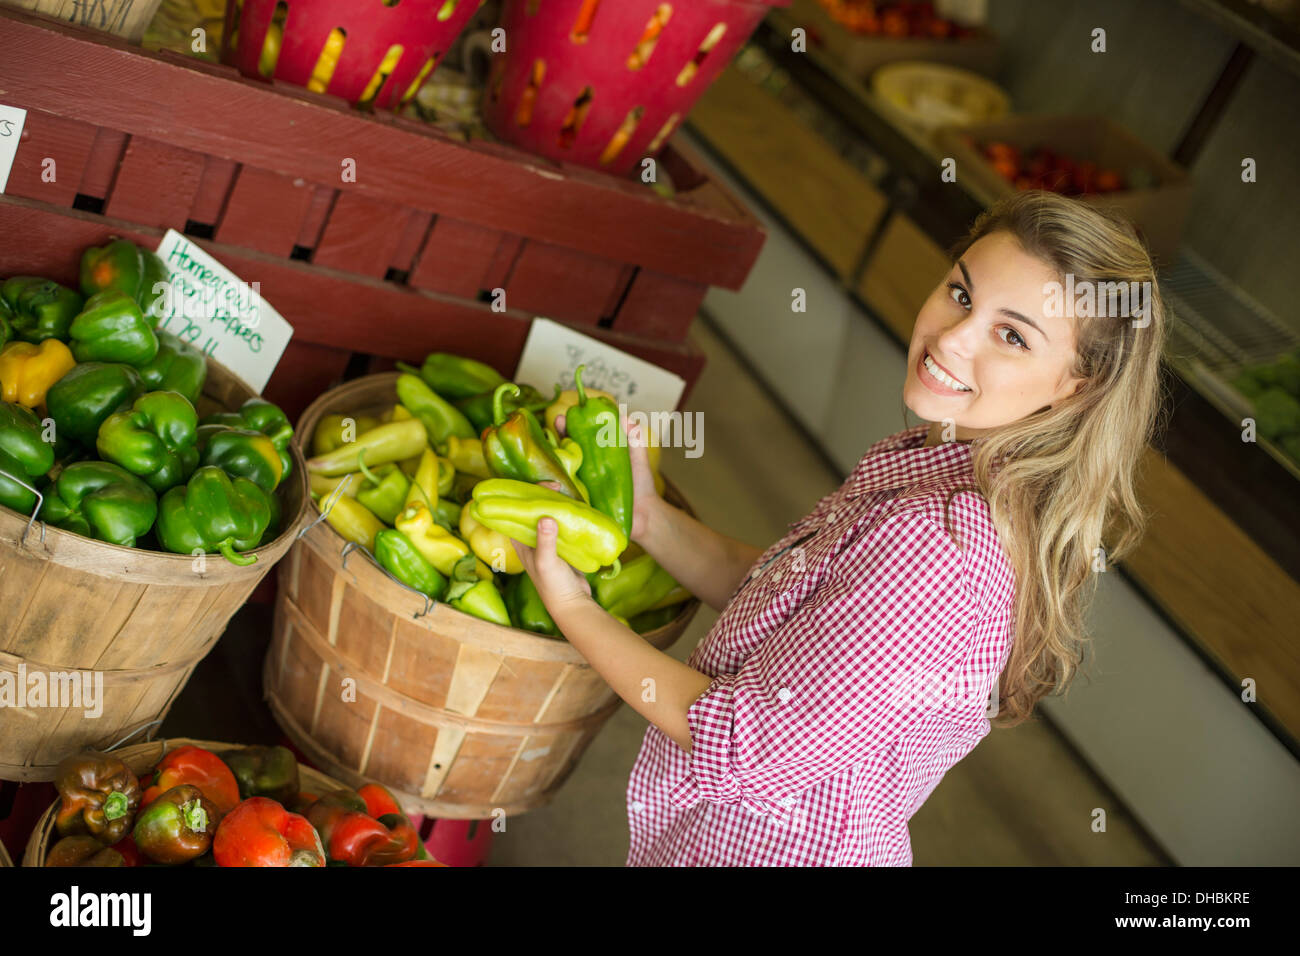 Trabajando en una granja orgánica. Una joven mujer de pelo rubio clasificar distintos tipos de pimiento por la venta. Foto de stock